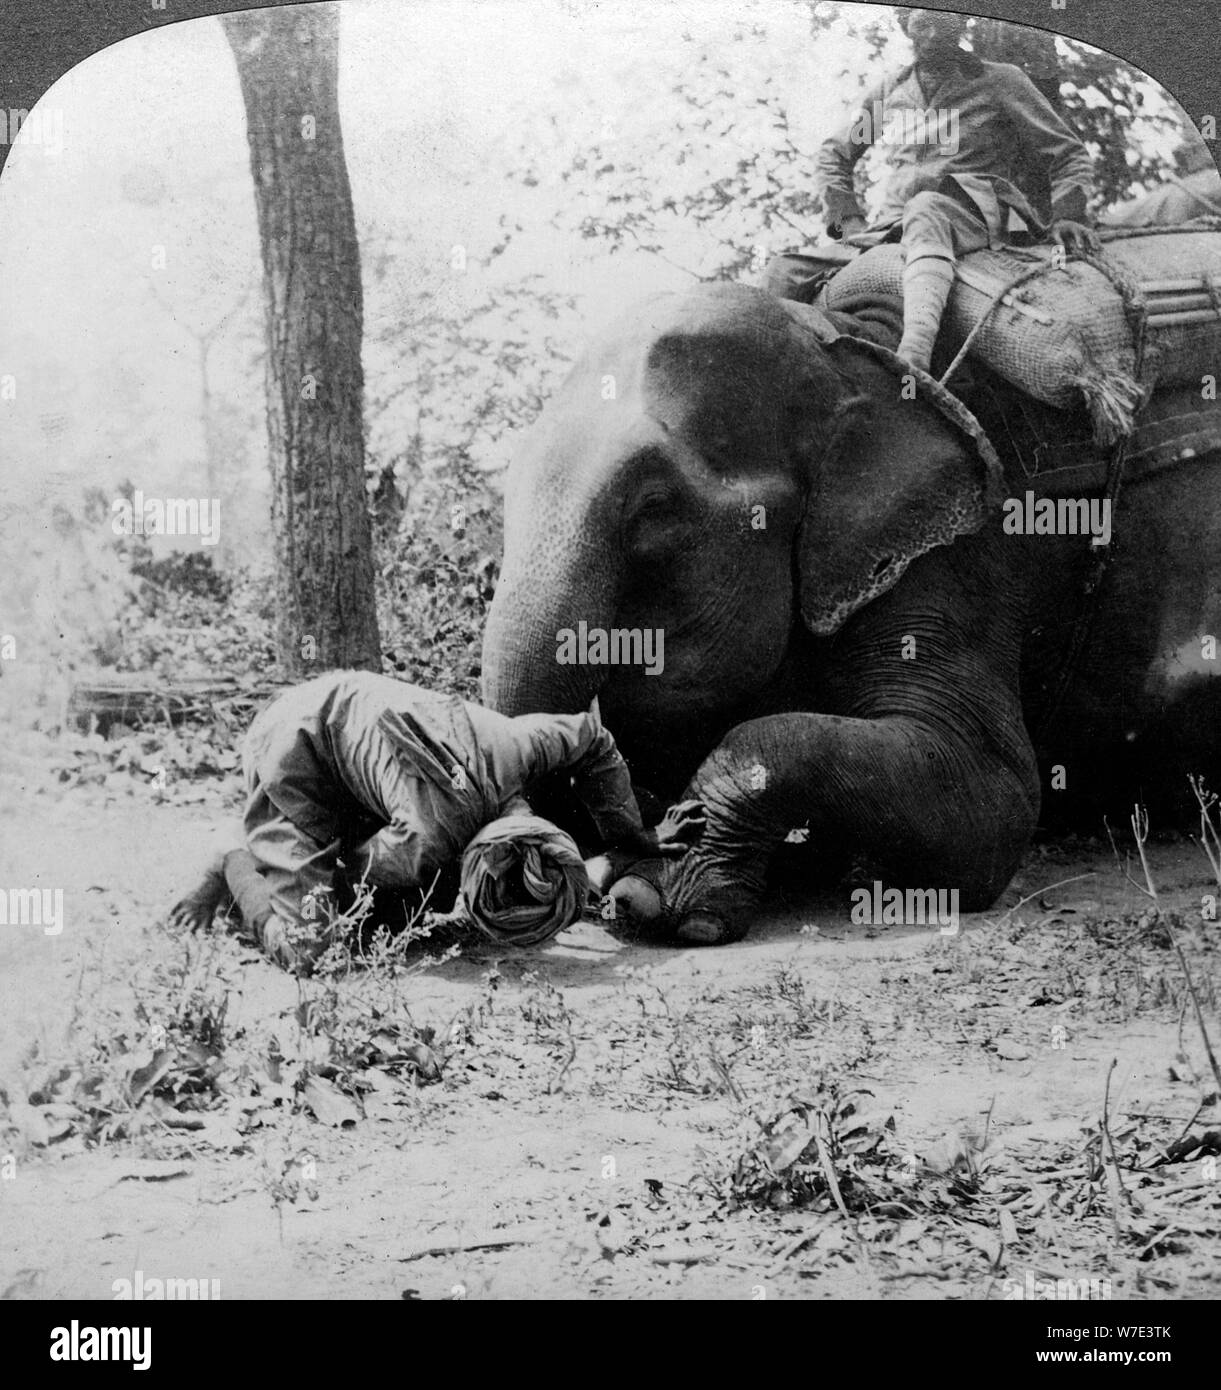 Mahout la rimozione di una spina da un elefante il piede, Behar tiger shoot, India, c1900s(?).Artista: Underwood & Underwood Foto Stock